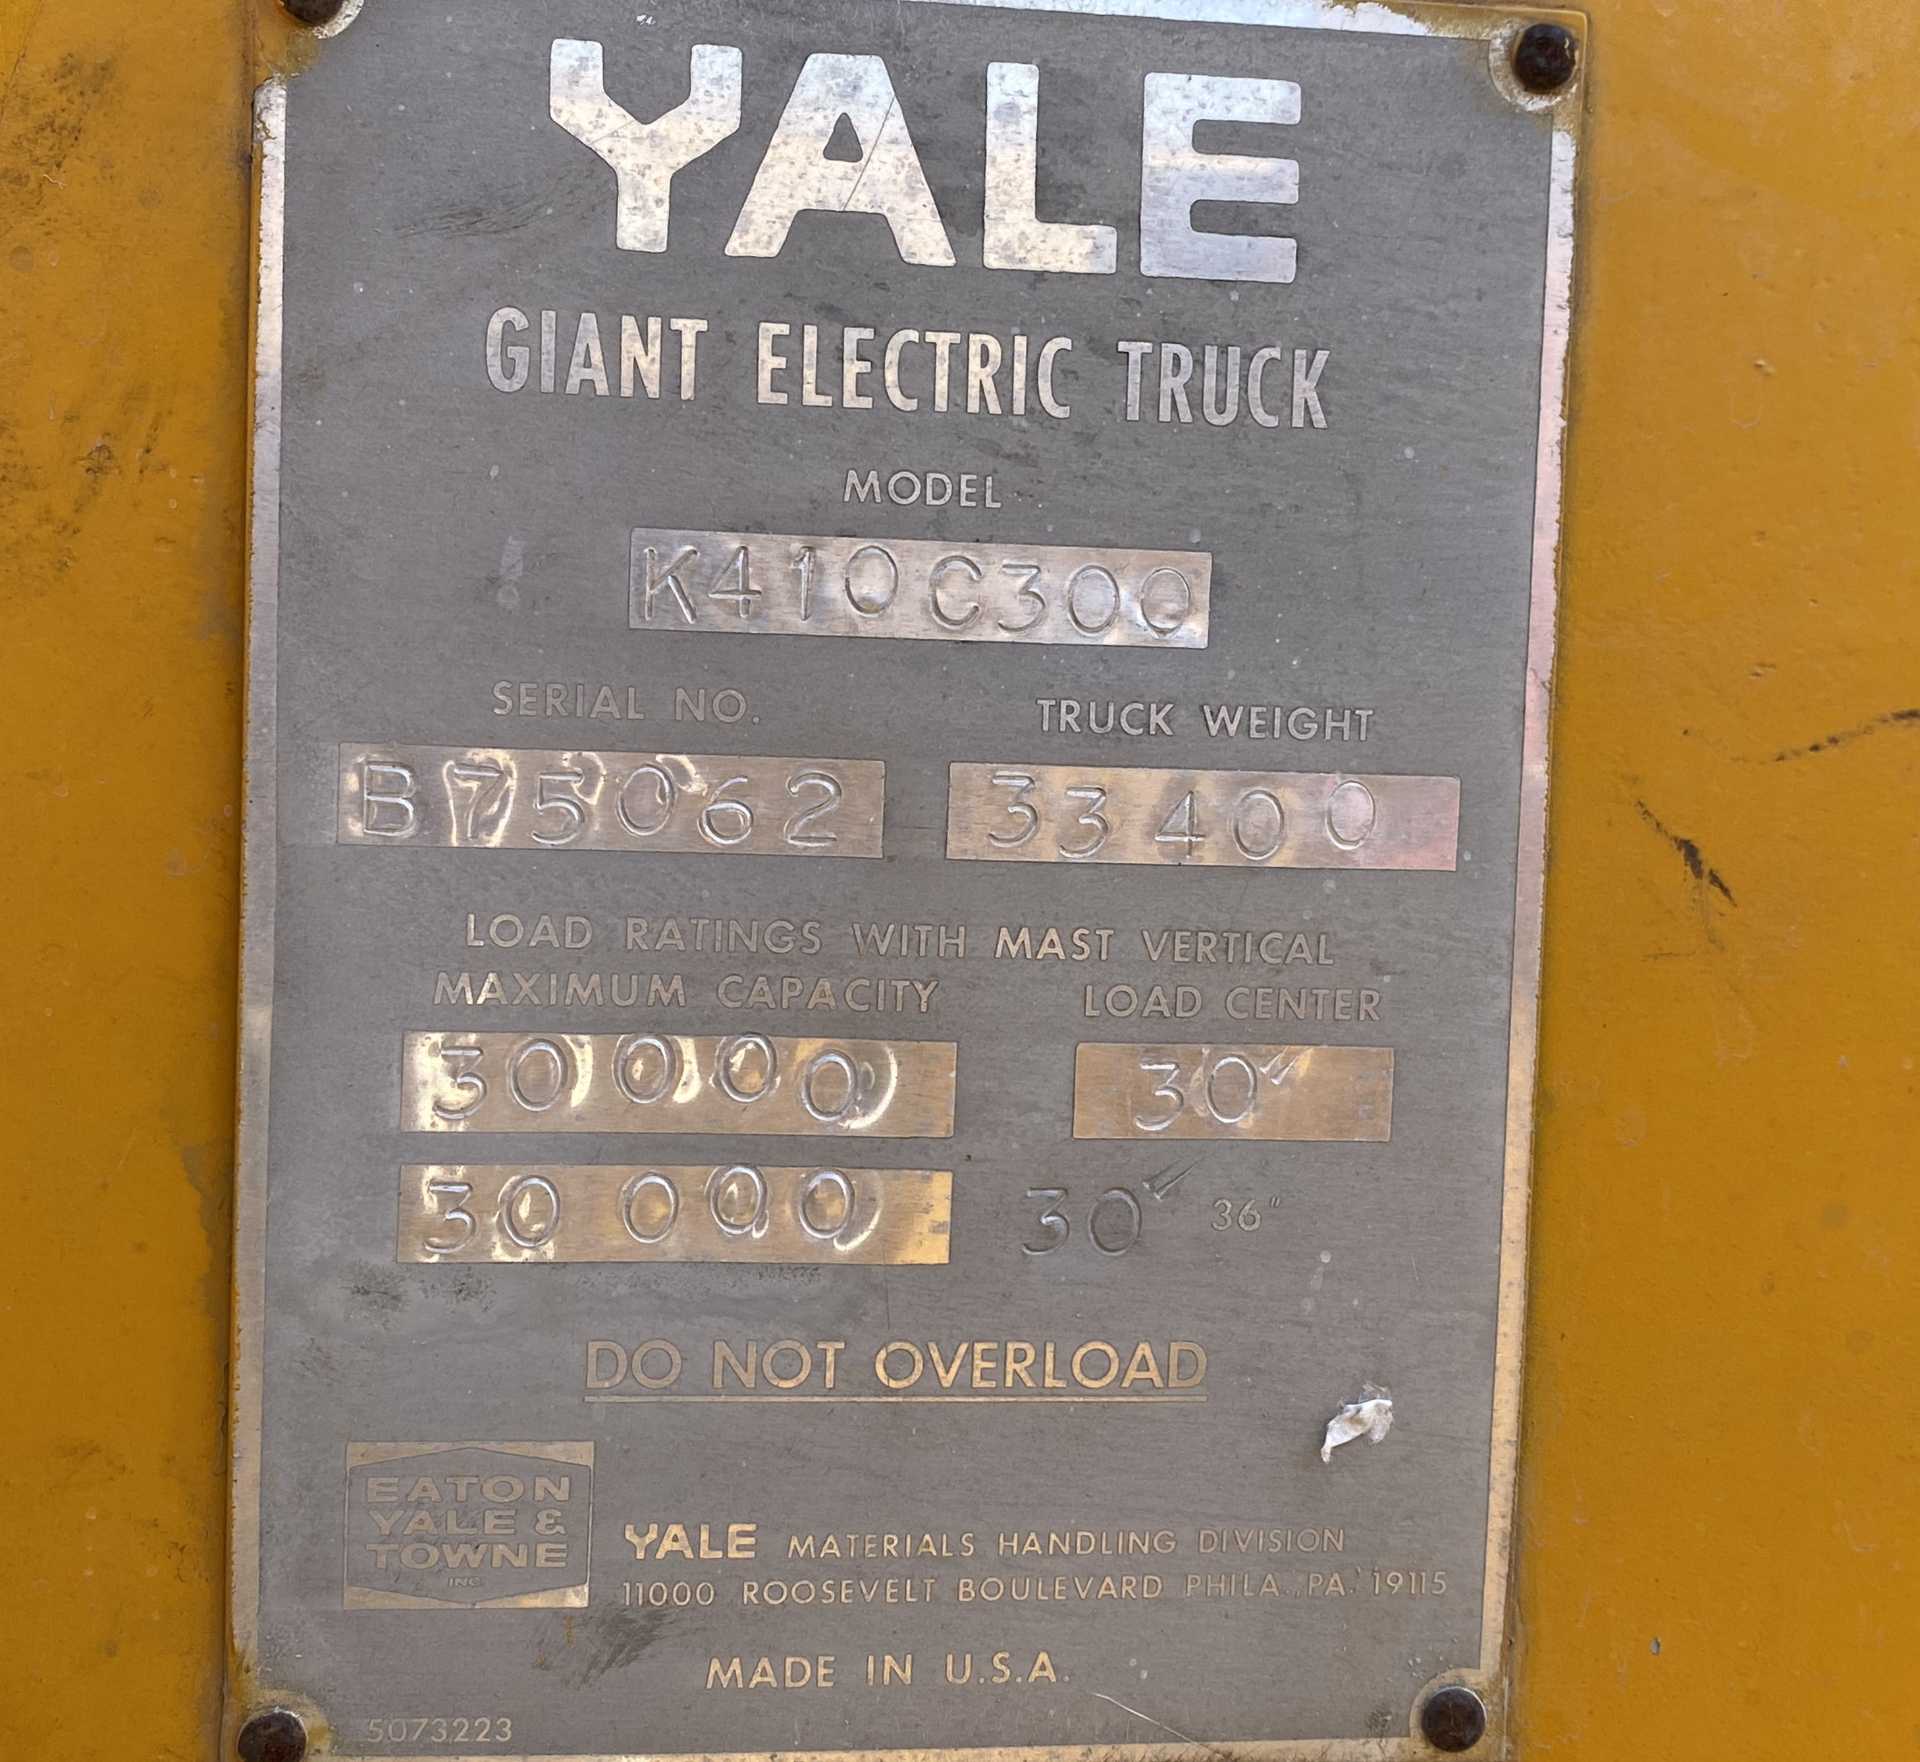 Yale Giant Electric Truck Forklift 72 Volt K410C300 30K Capacity 62" Forks